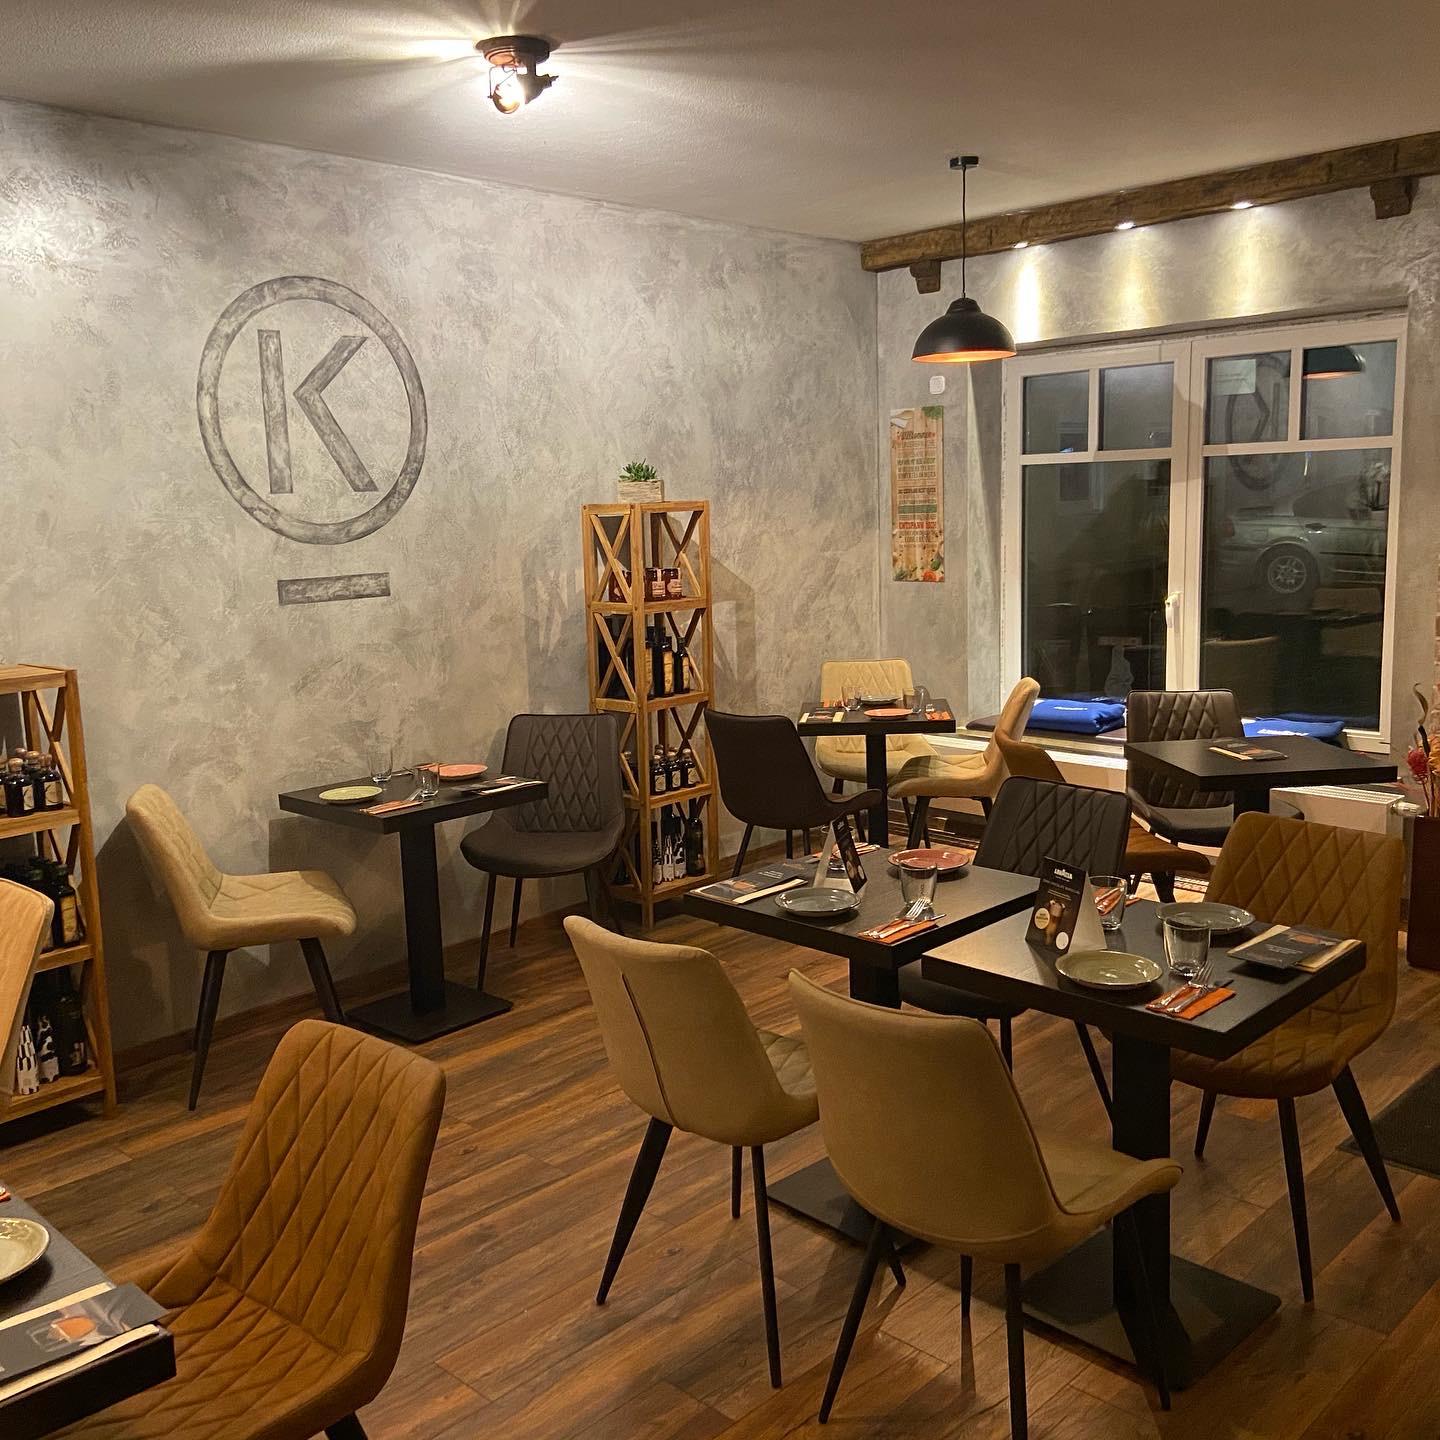 Restaurant "Kostas" in Dorfen